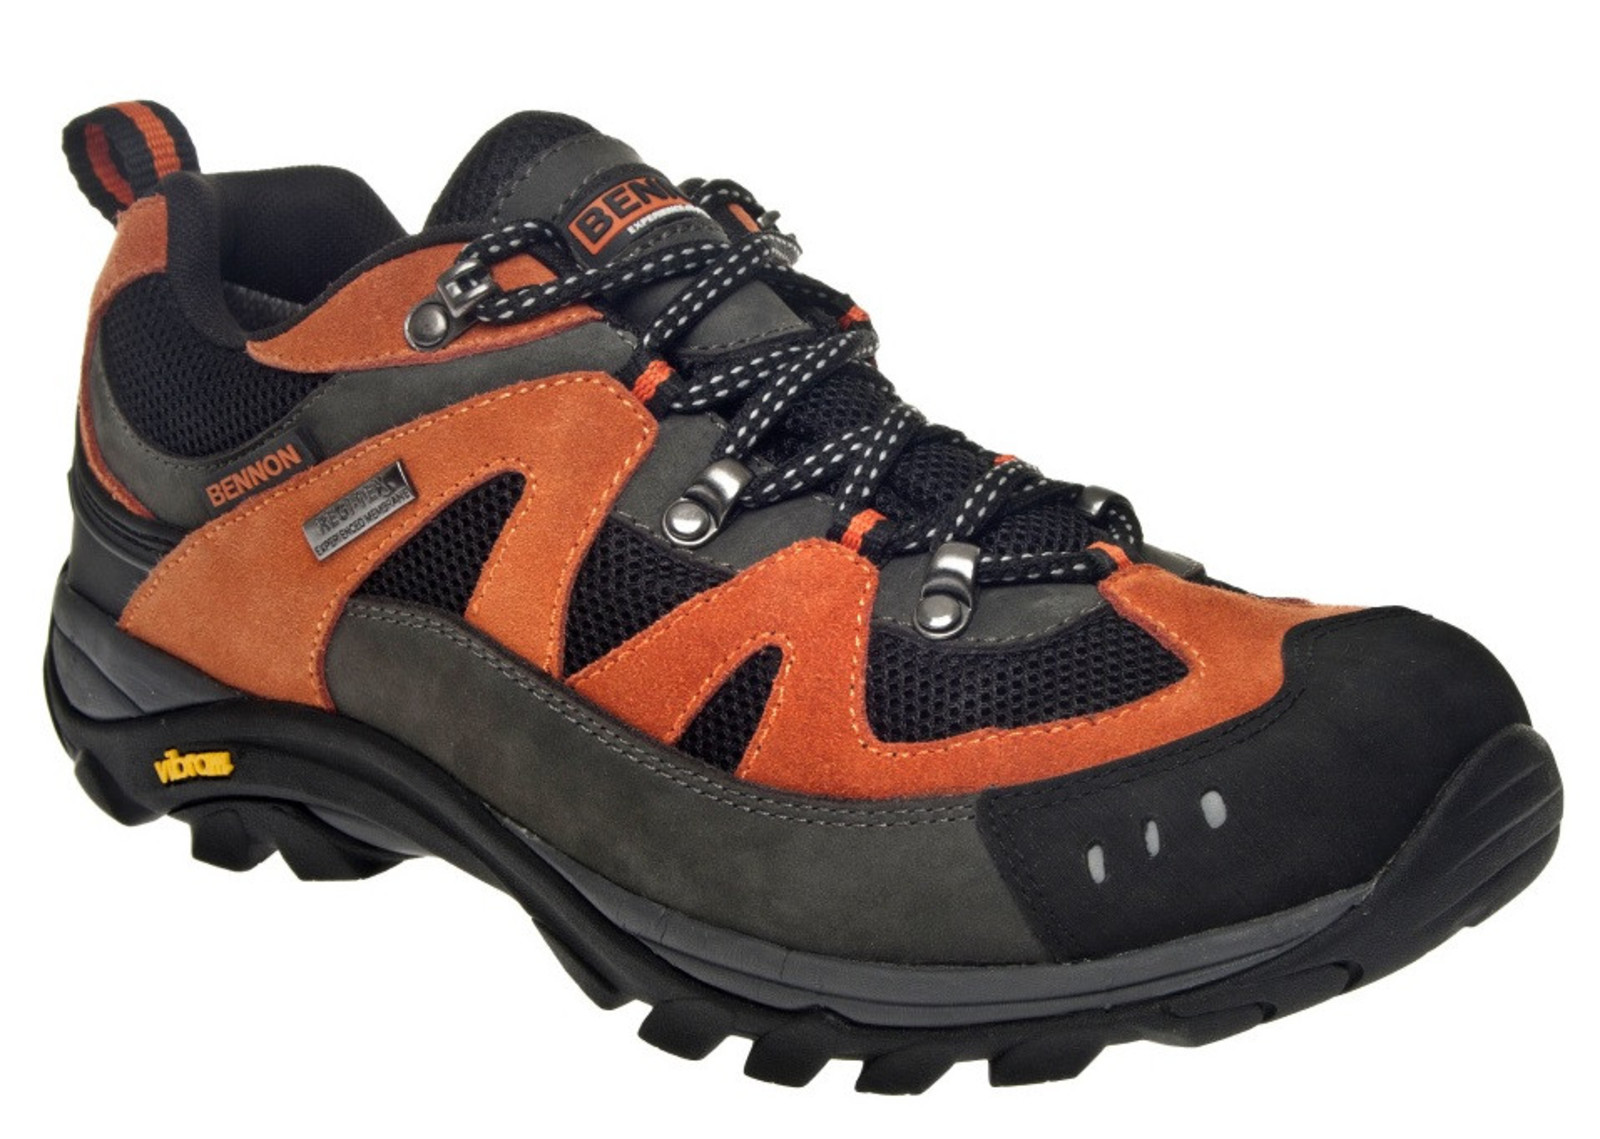 Outdoorové topánky Bennon Emperado s membránou - veľkosť: 40, farba: sivá/oranžová